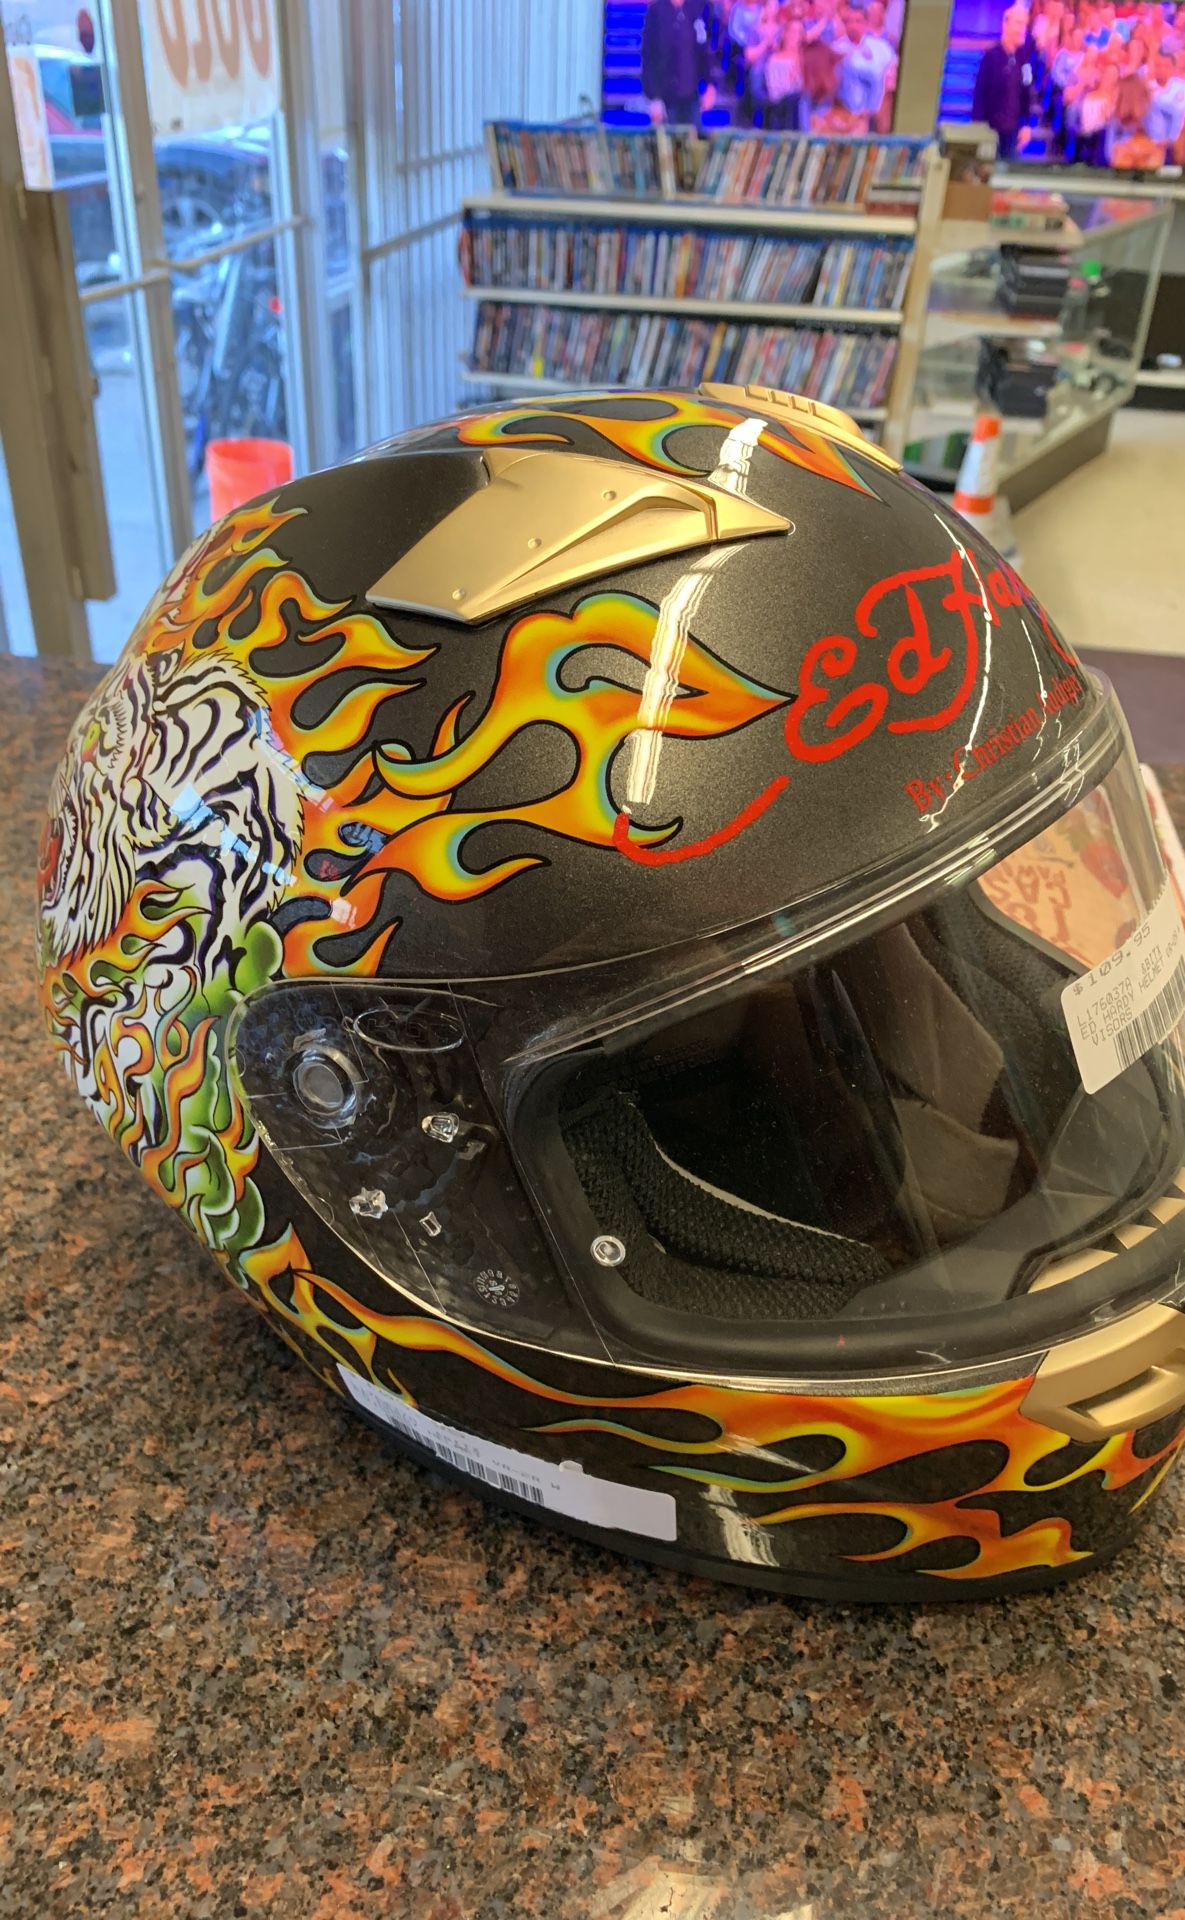 Ed hardy motorcycle helmet